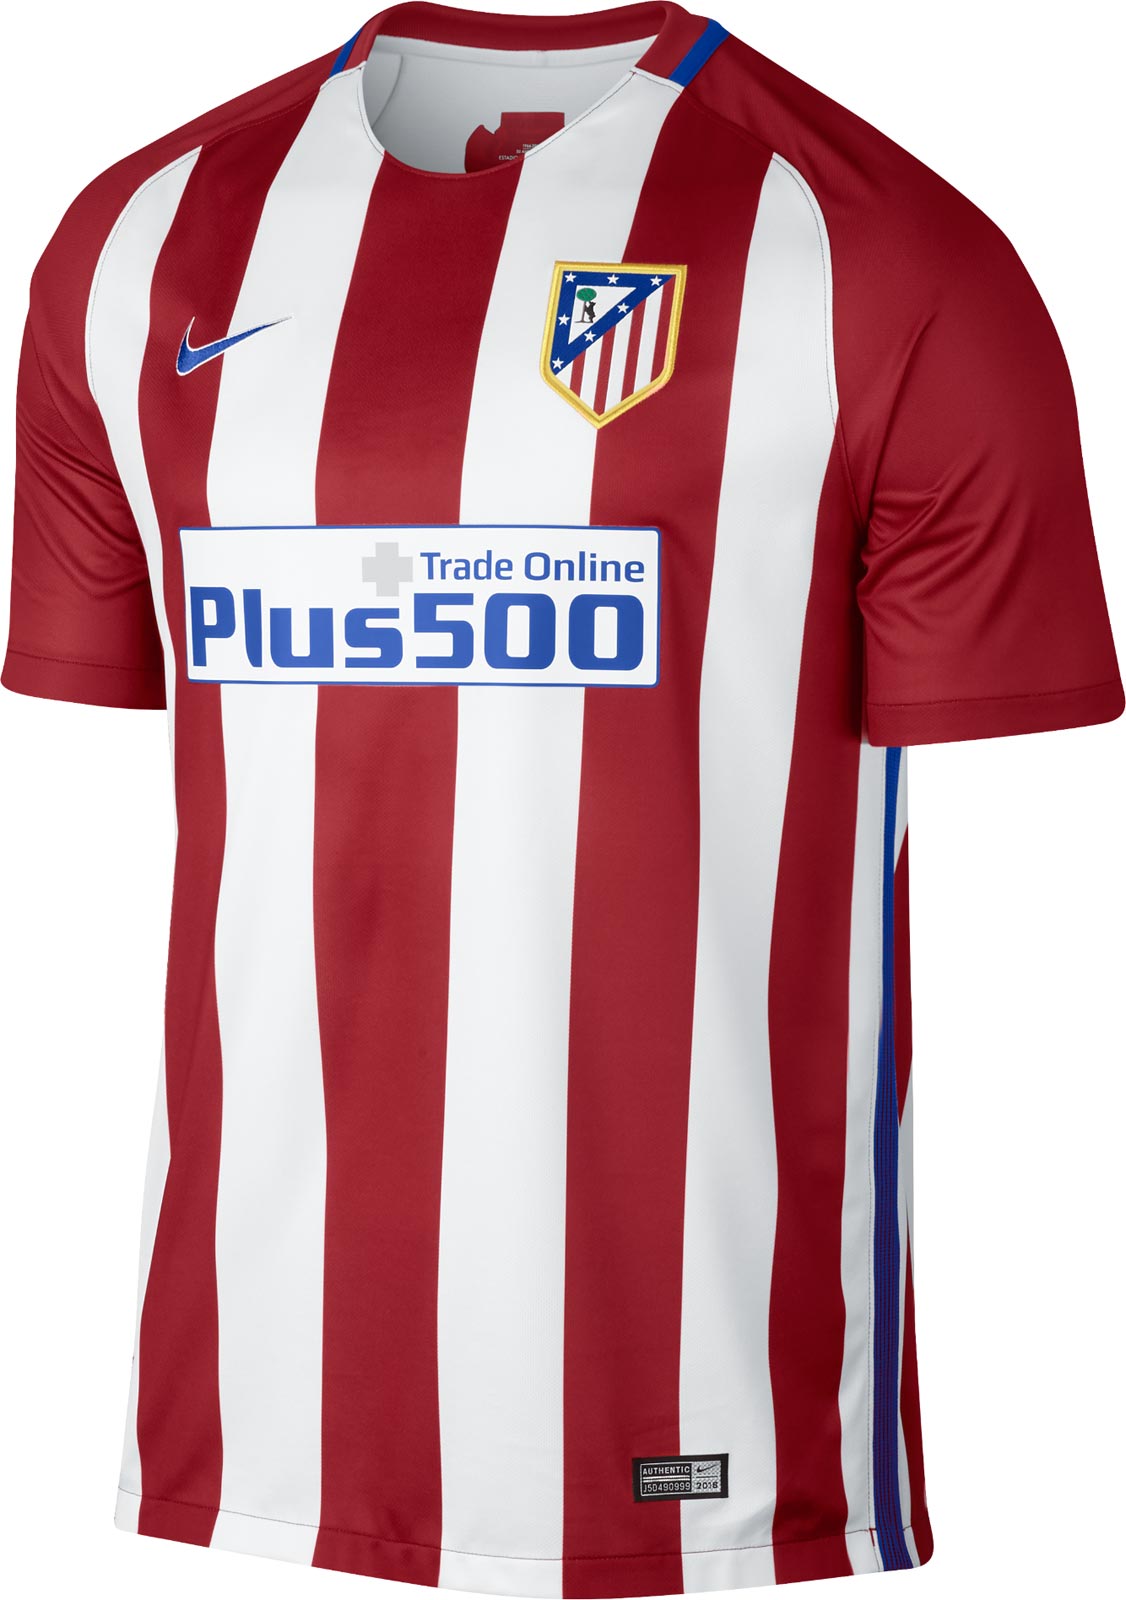 Atlético Madrid 16-17 Home Kit Released - Footy Headlines